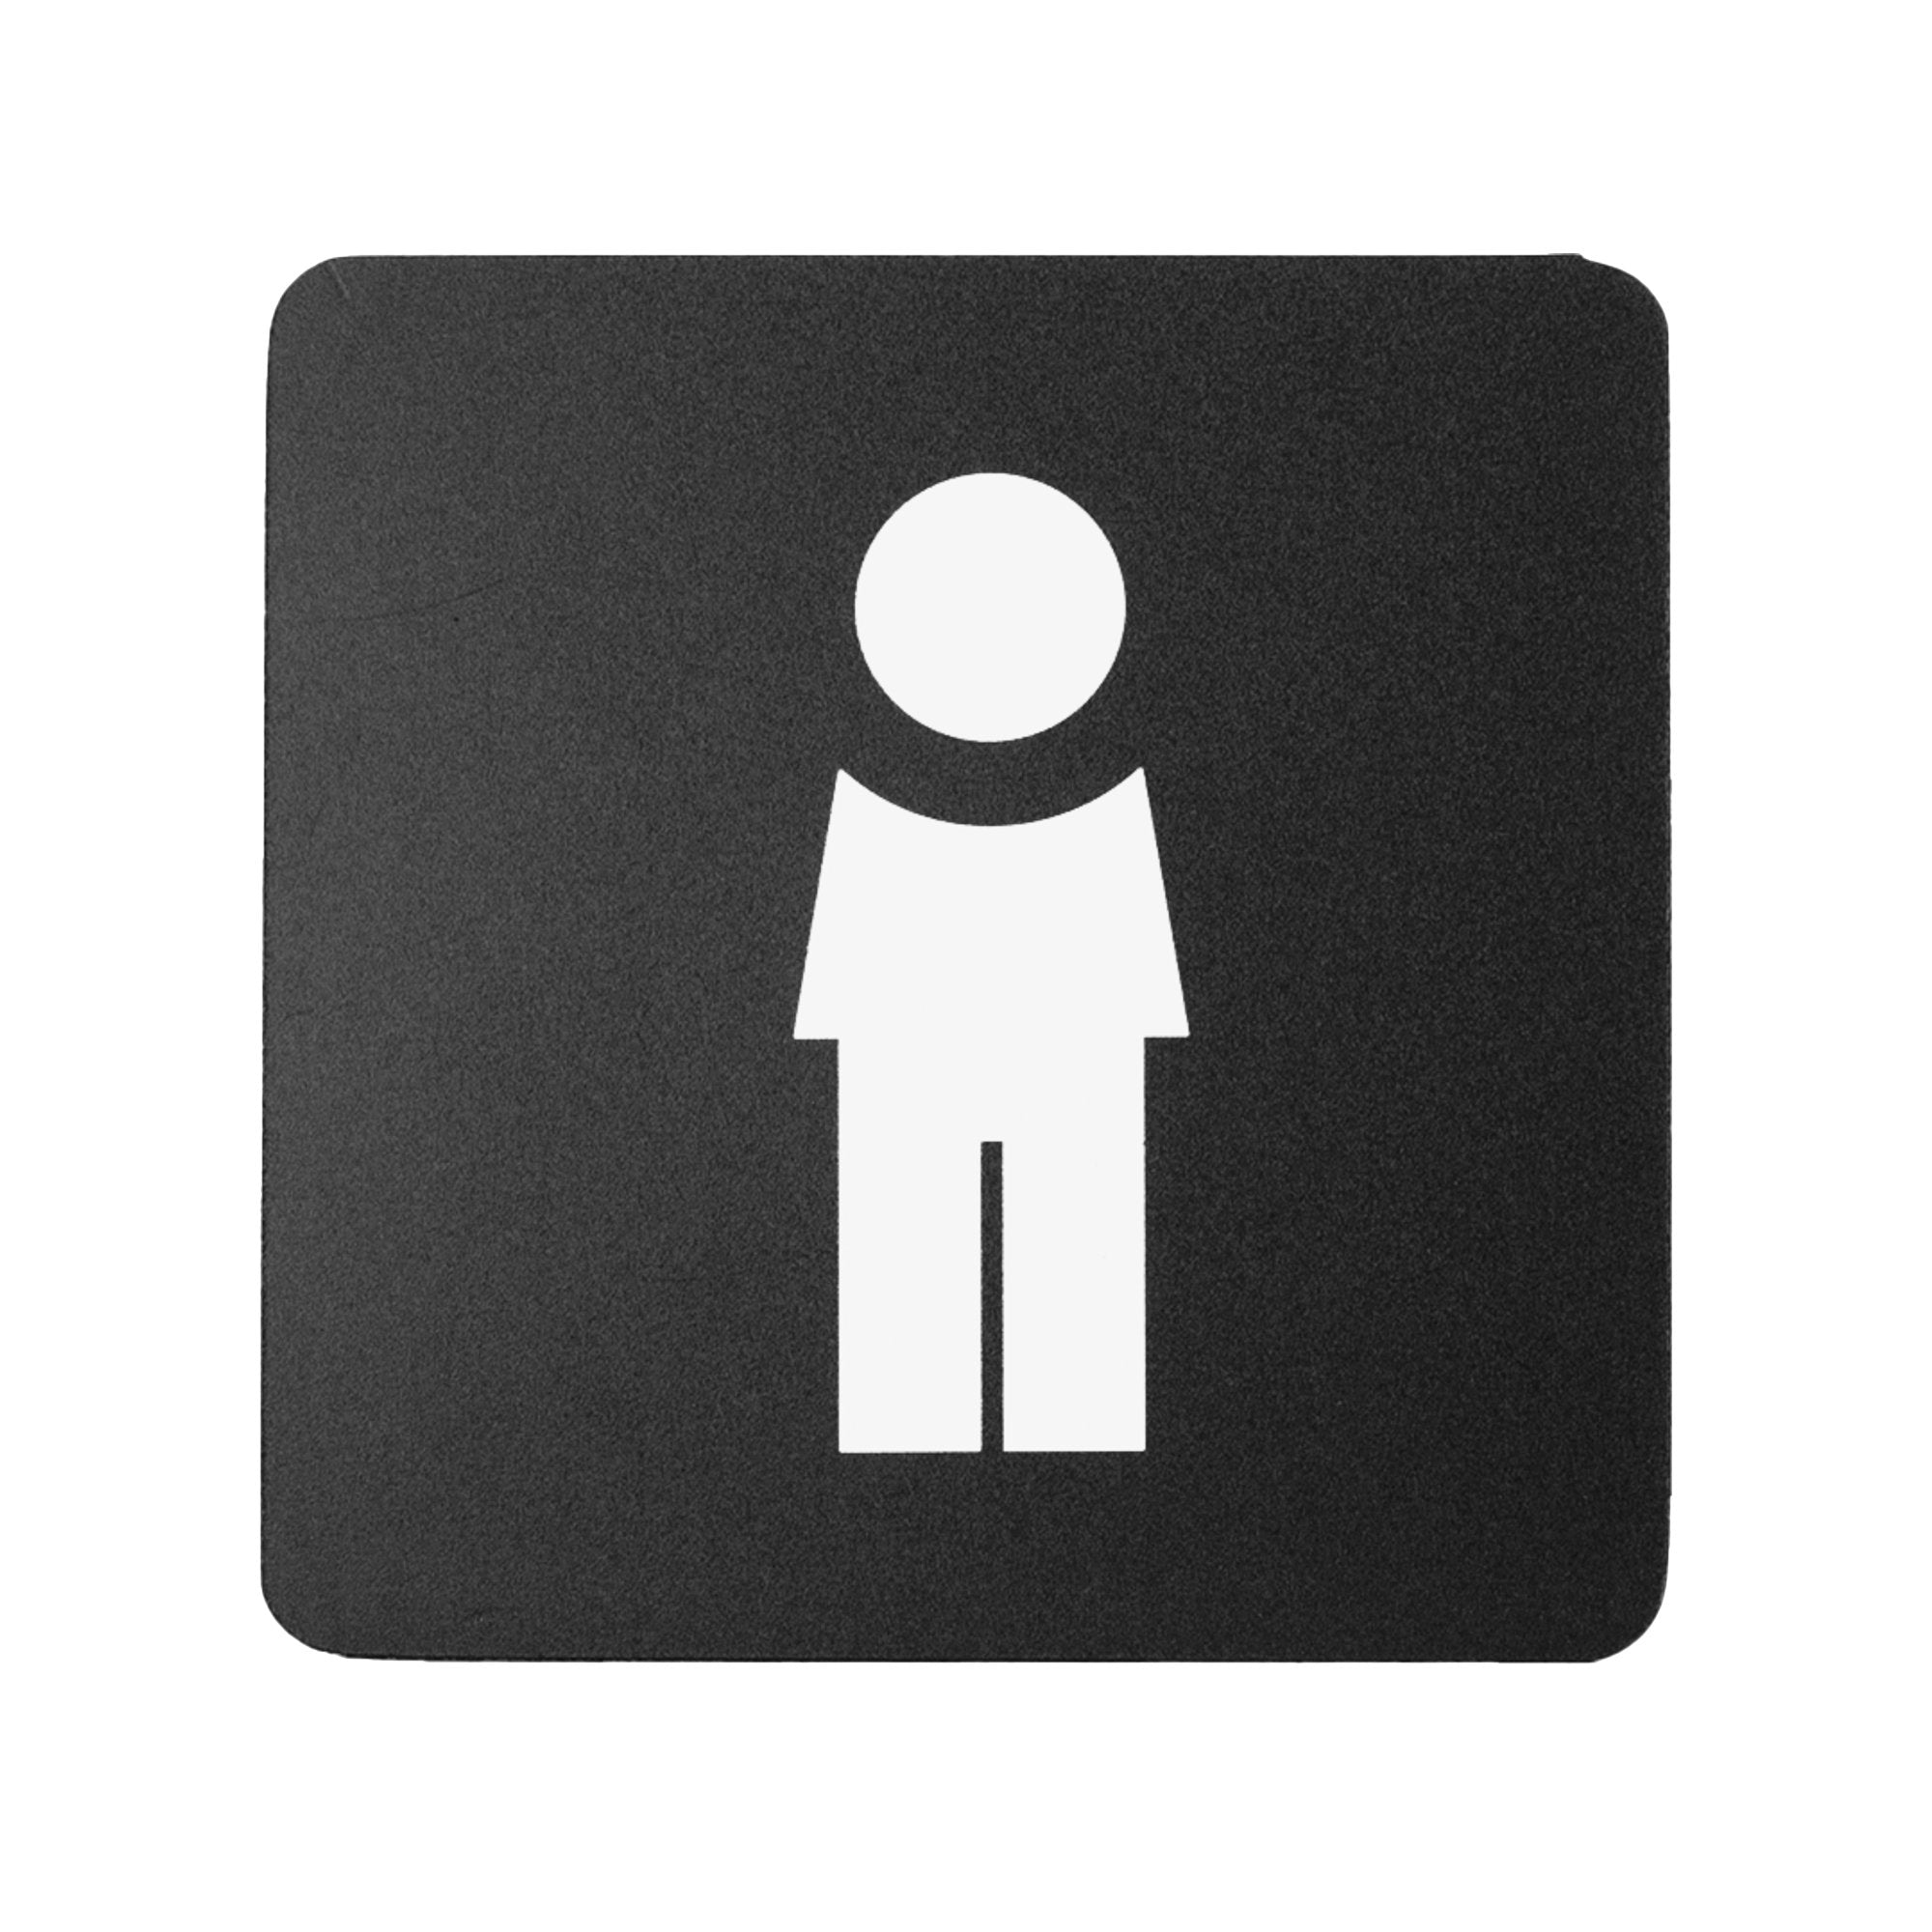 stilcasa-pittogramma-toilette-uomo-16x16cm-pvc-nero-bianco